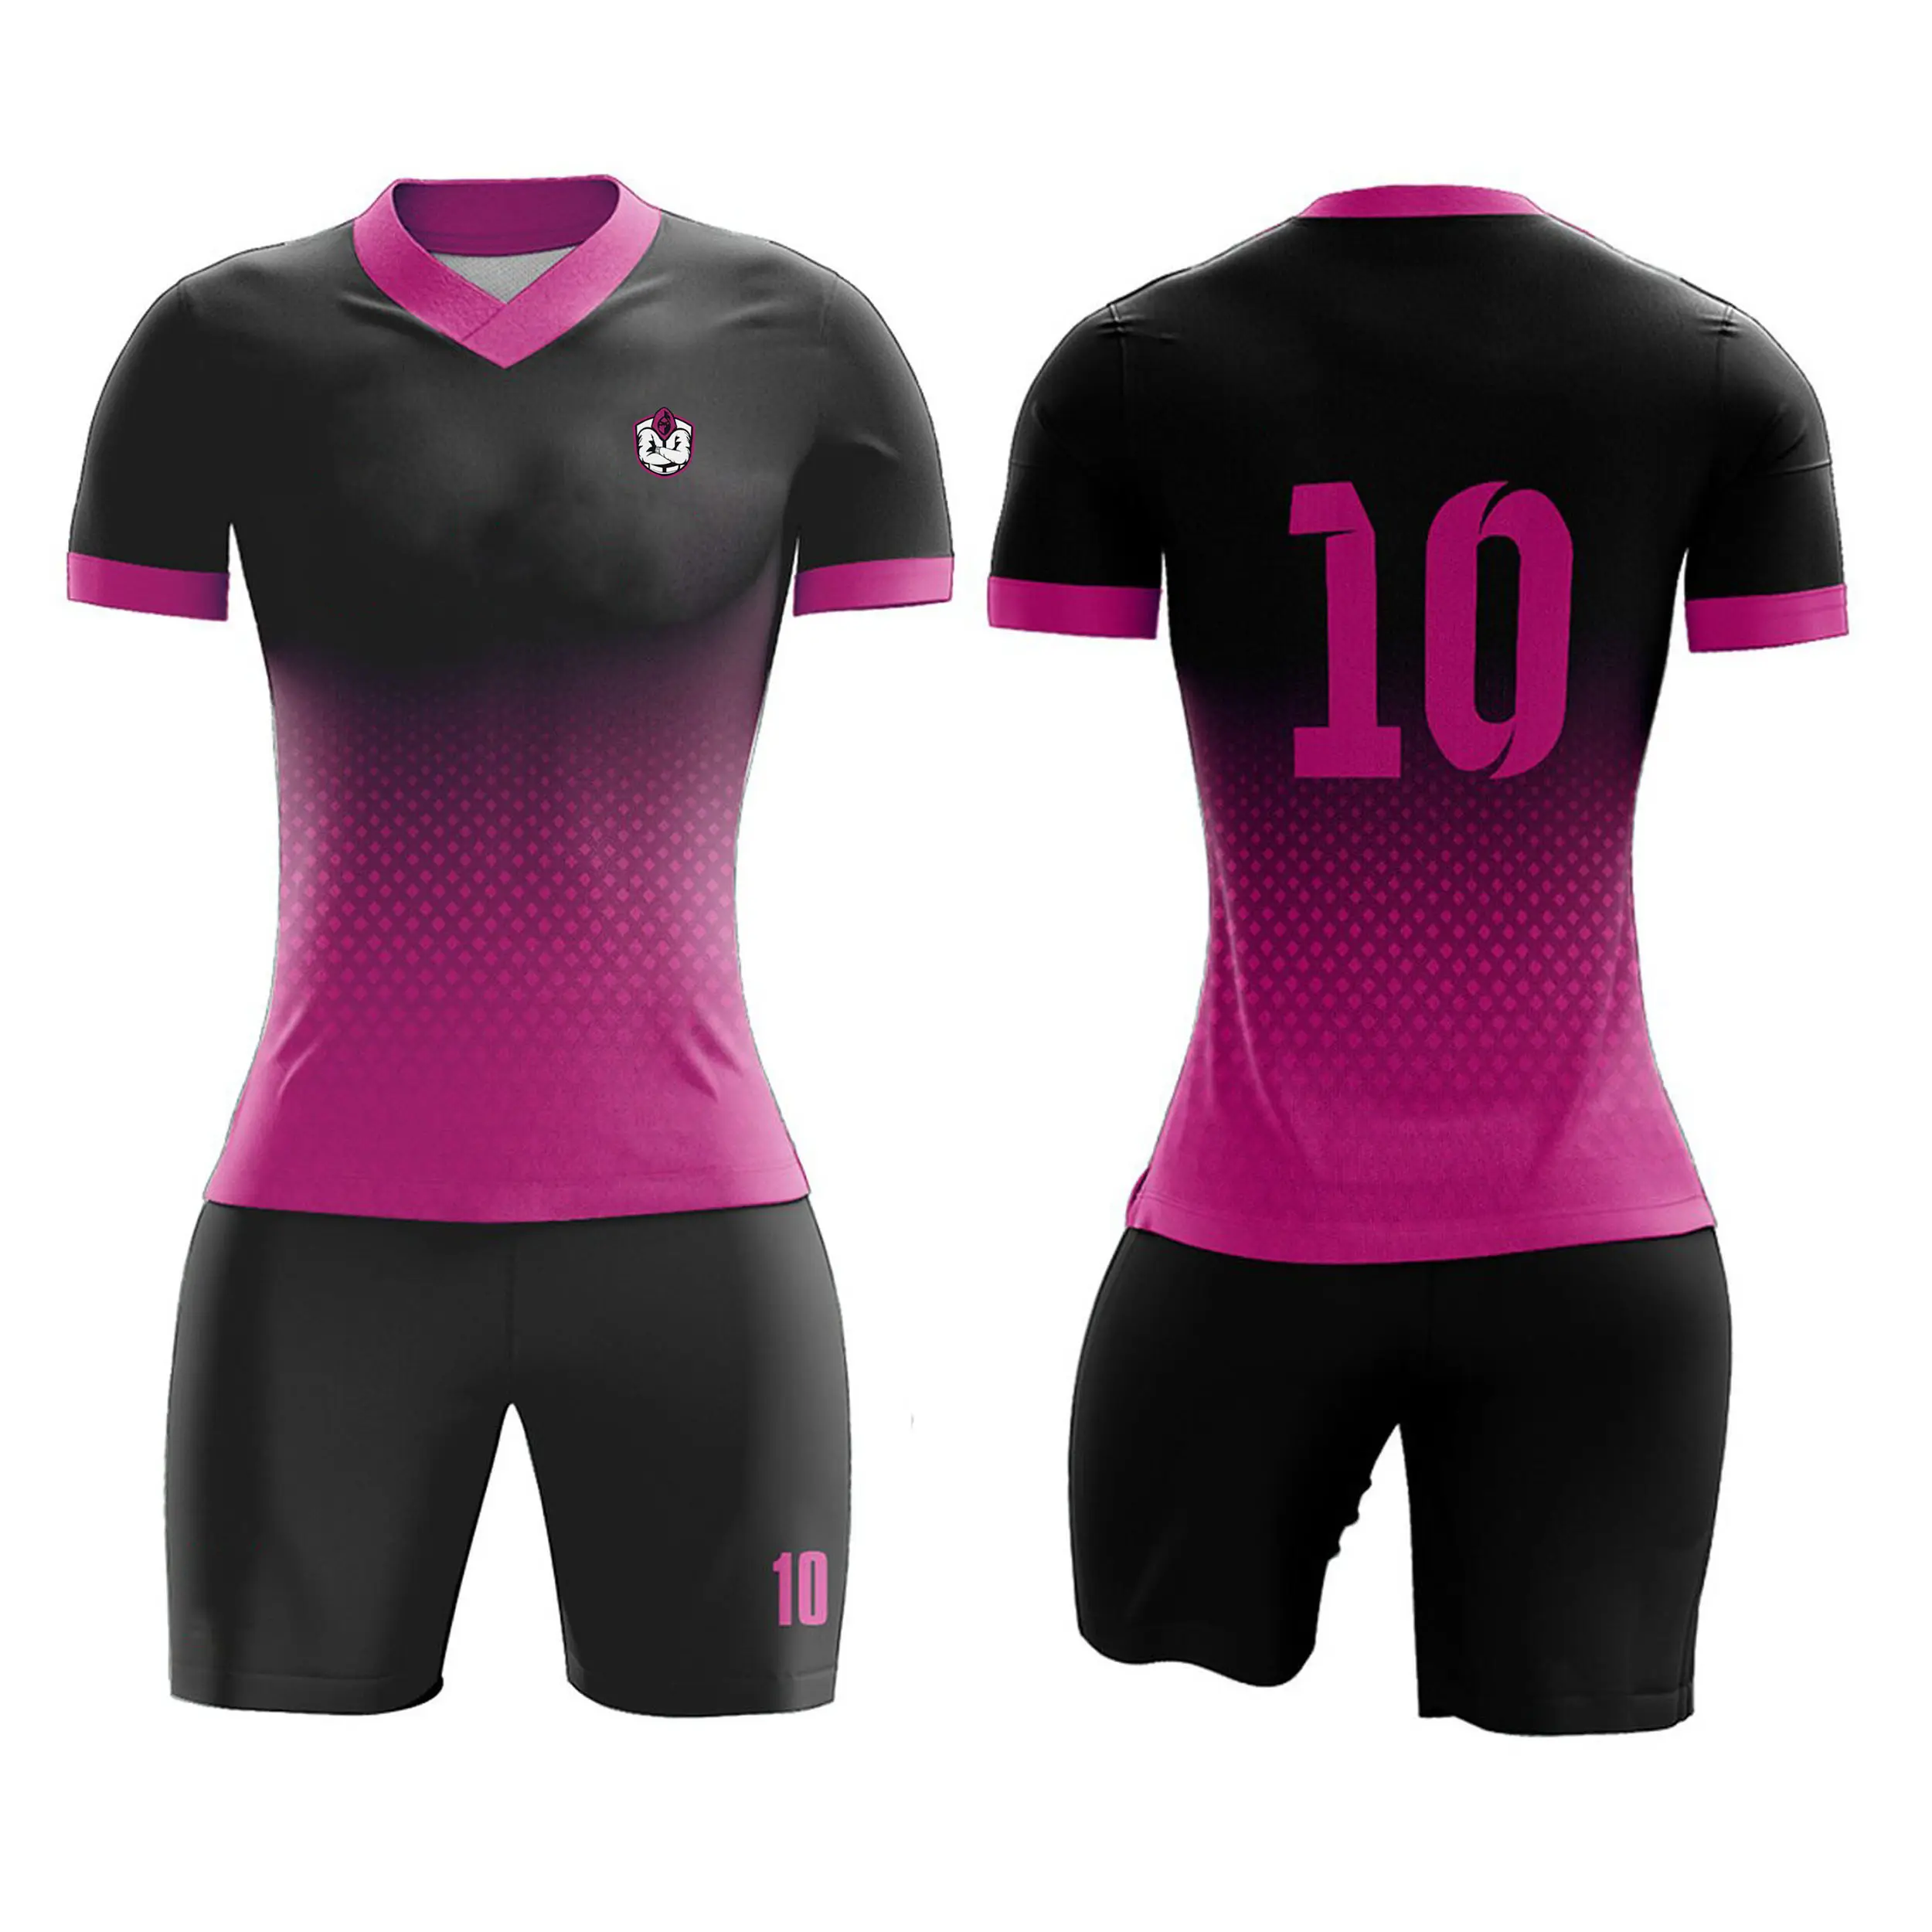 Uniforme de fútbol personalizado para niñas y mujeres, uniforme de fútbol barato